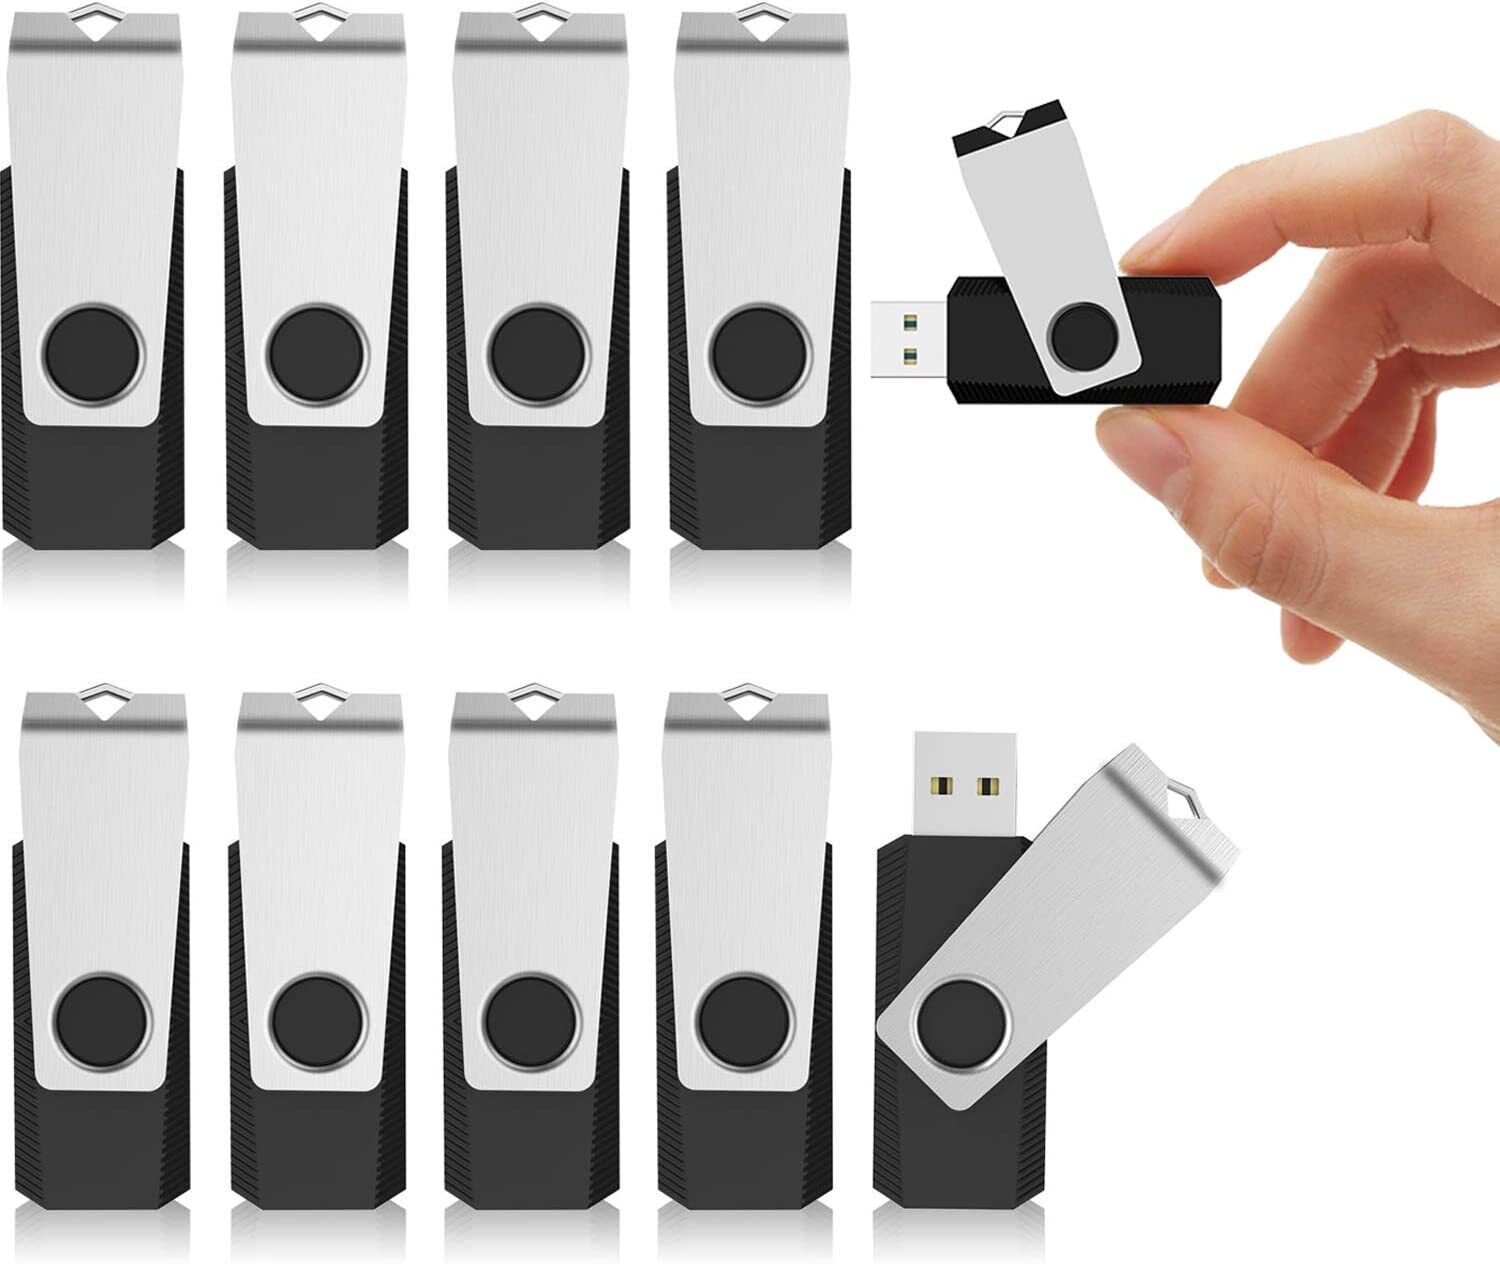 LOT 10/20pcs 1-128GB USB Flash Drives Pen Thumb Drive Metal Swivel Memory Stick